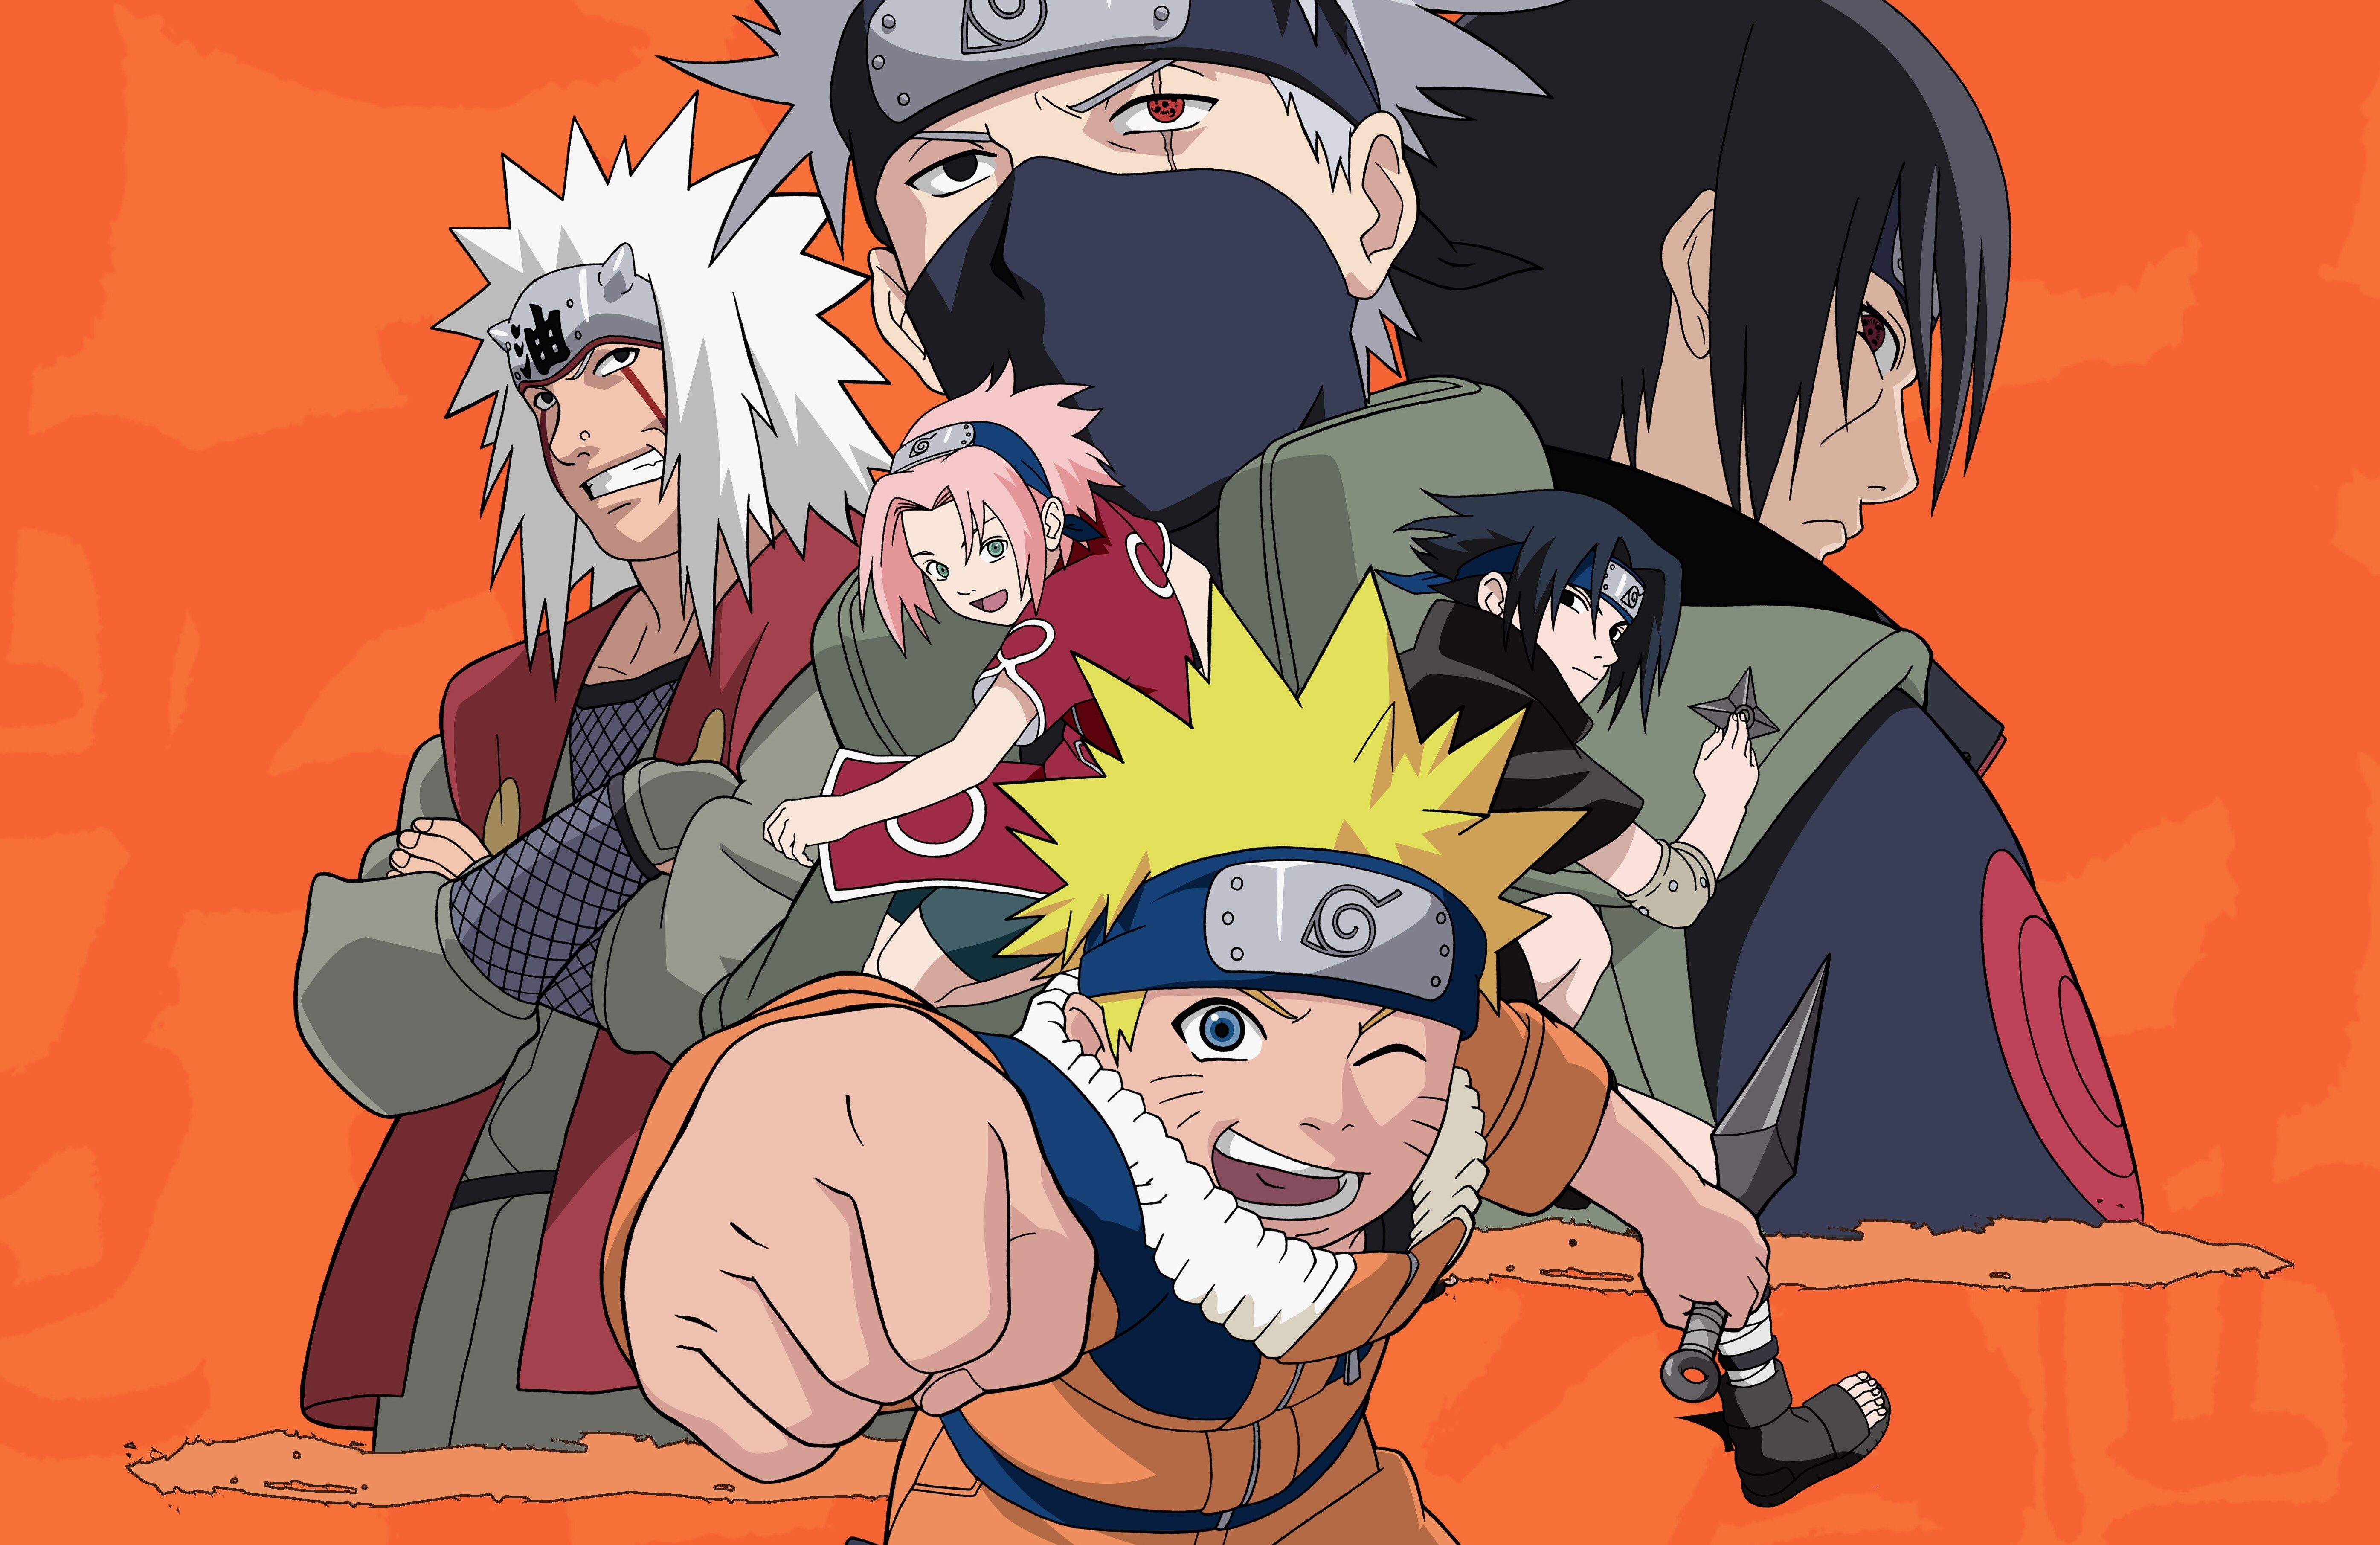 Le 11 décembre 2022, le manga Naruto sera interprété par 50 musiciens et les meilleurs moments serontprojetés sur grand écran.